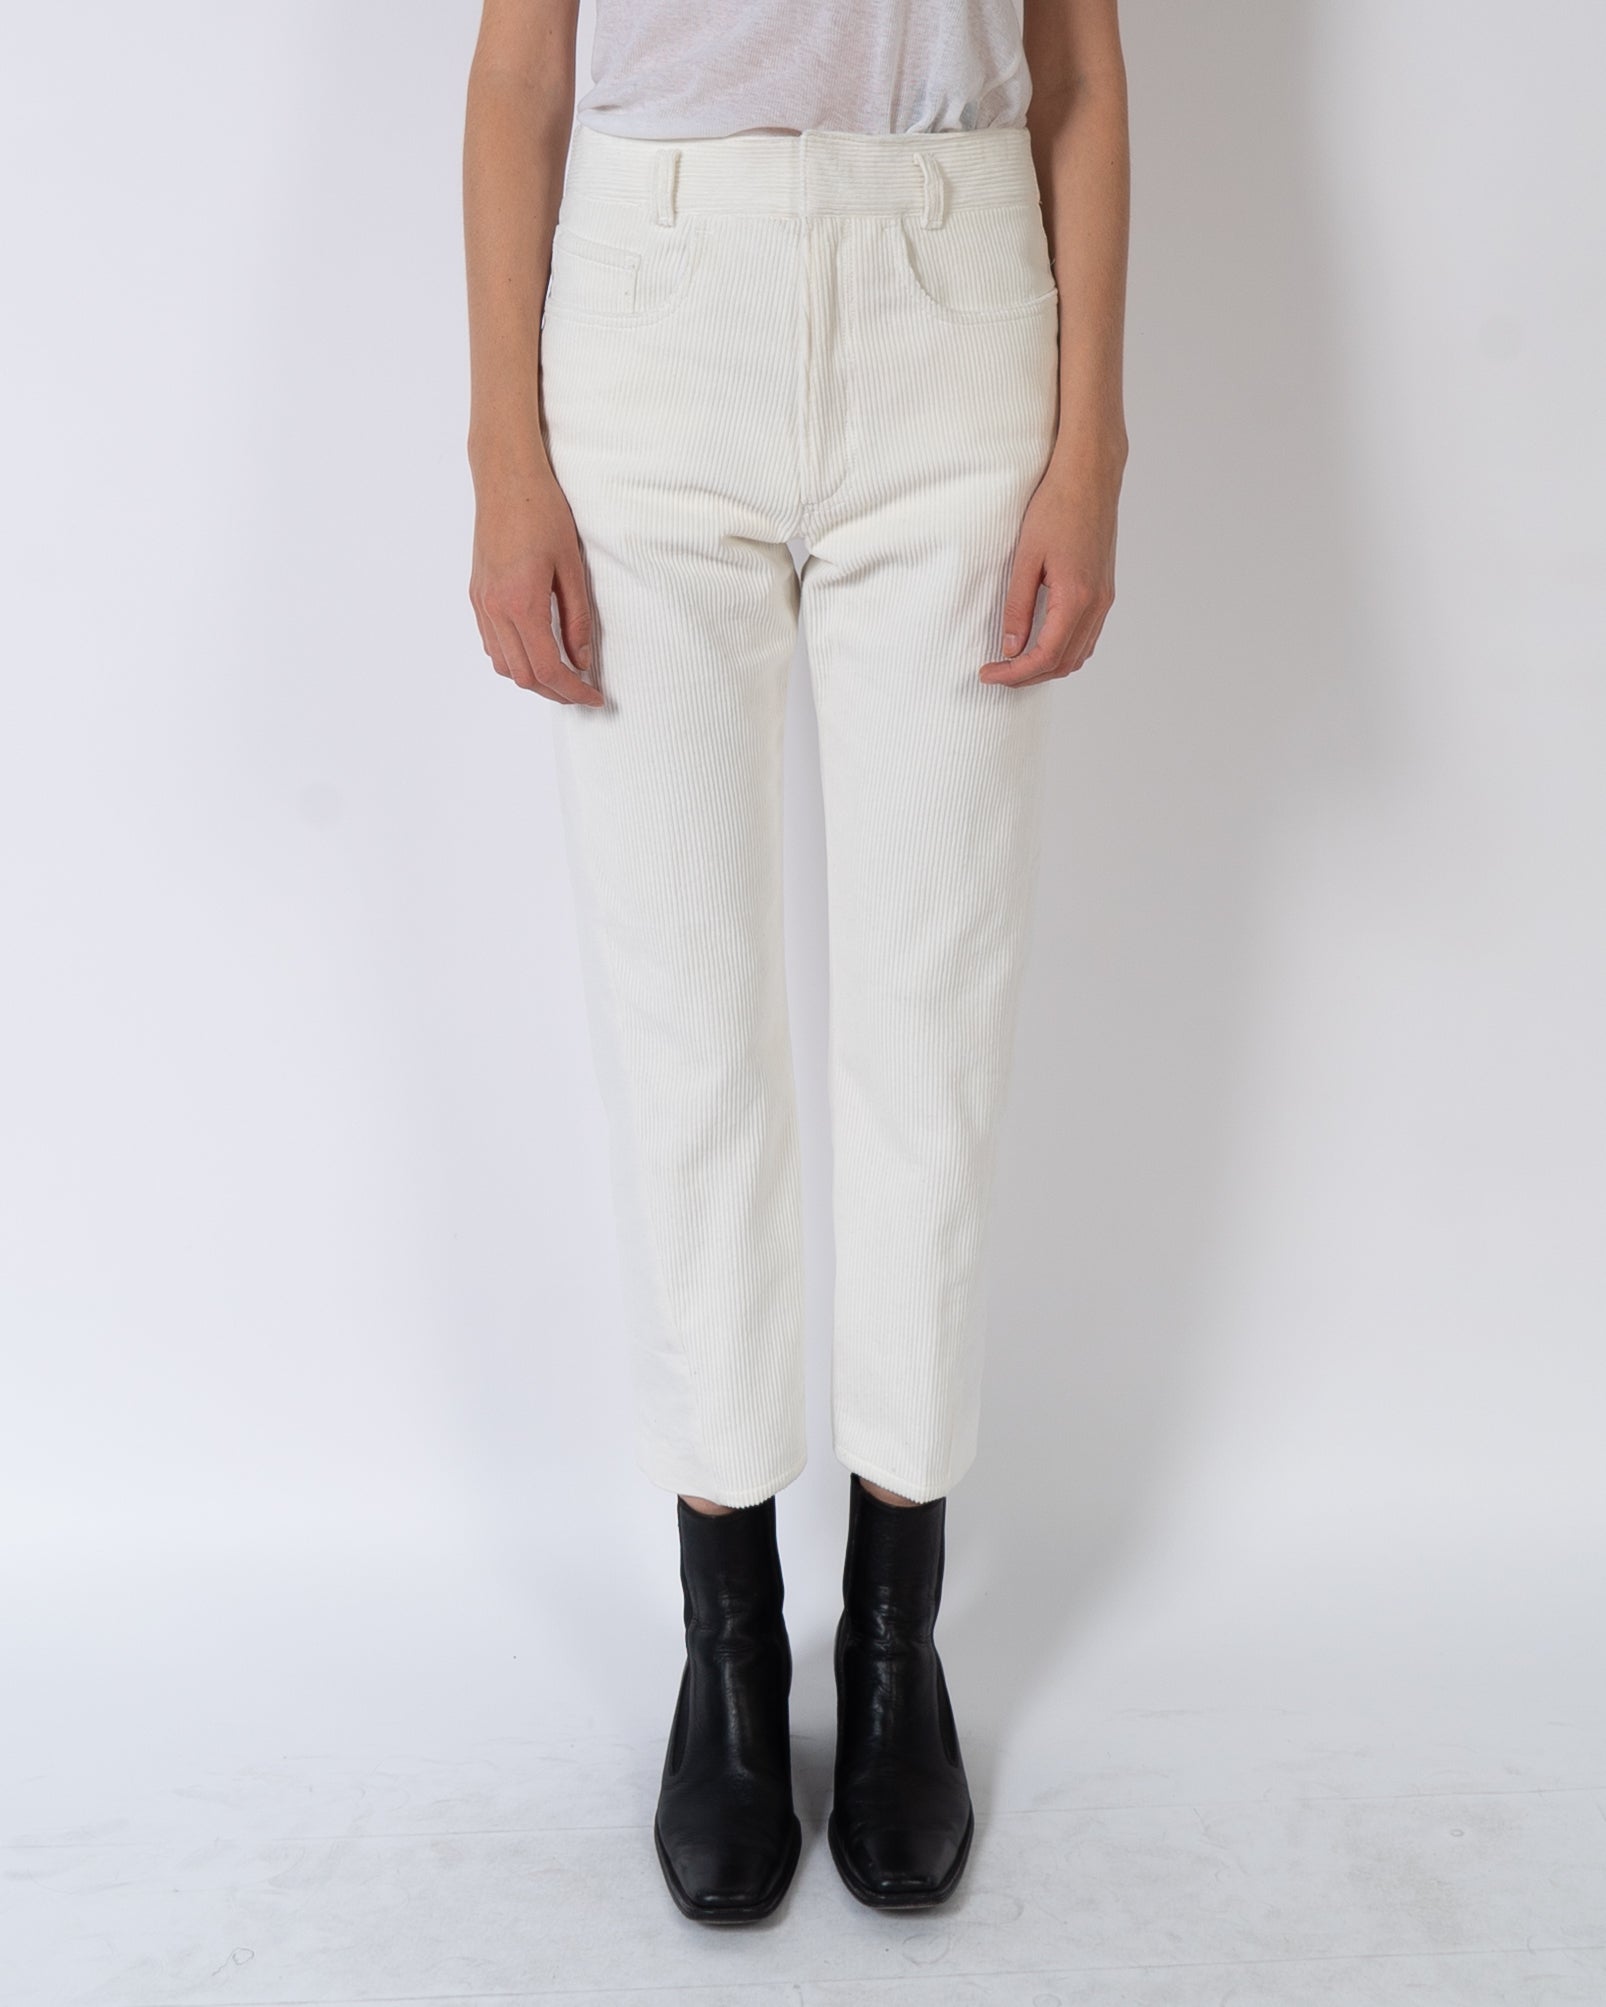 FW19 White Two-Tone Trousers